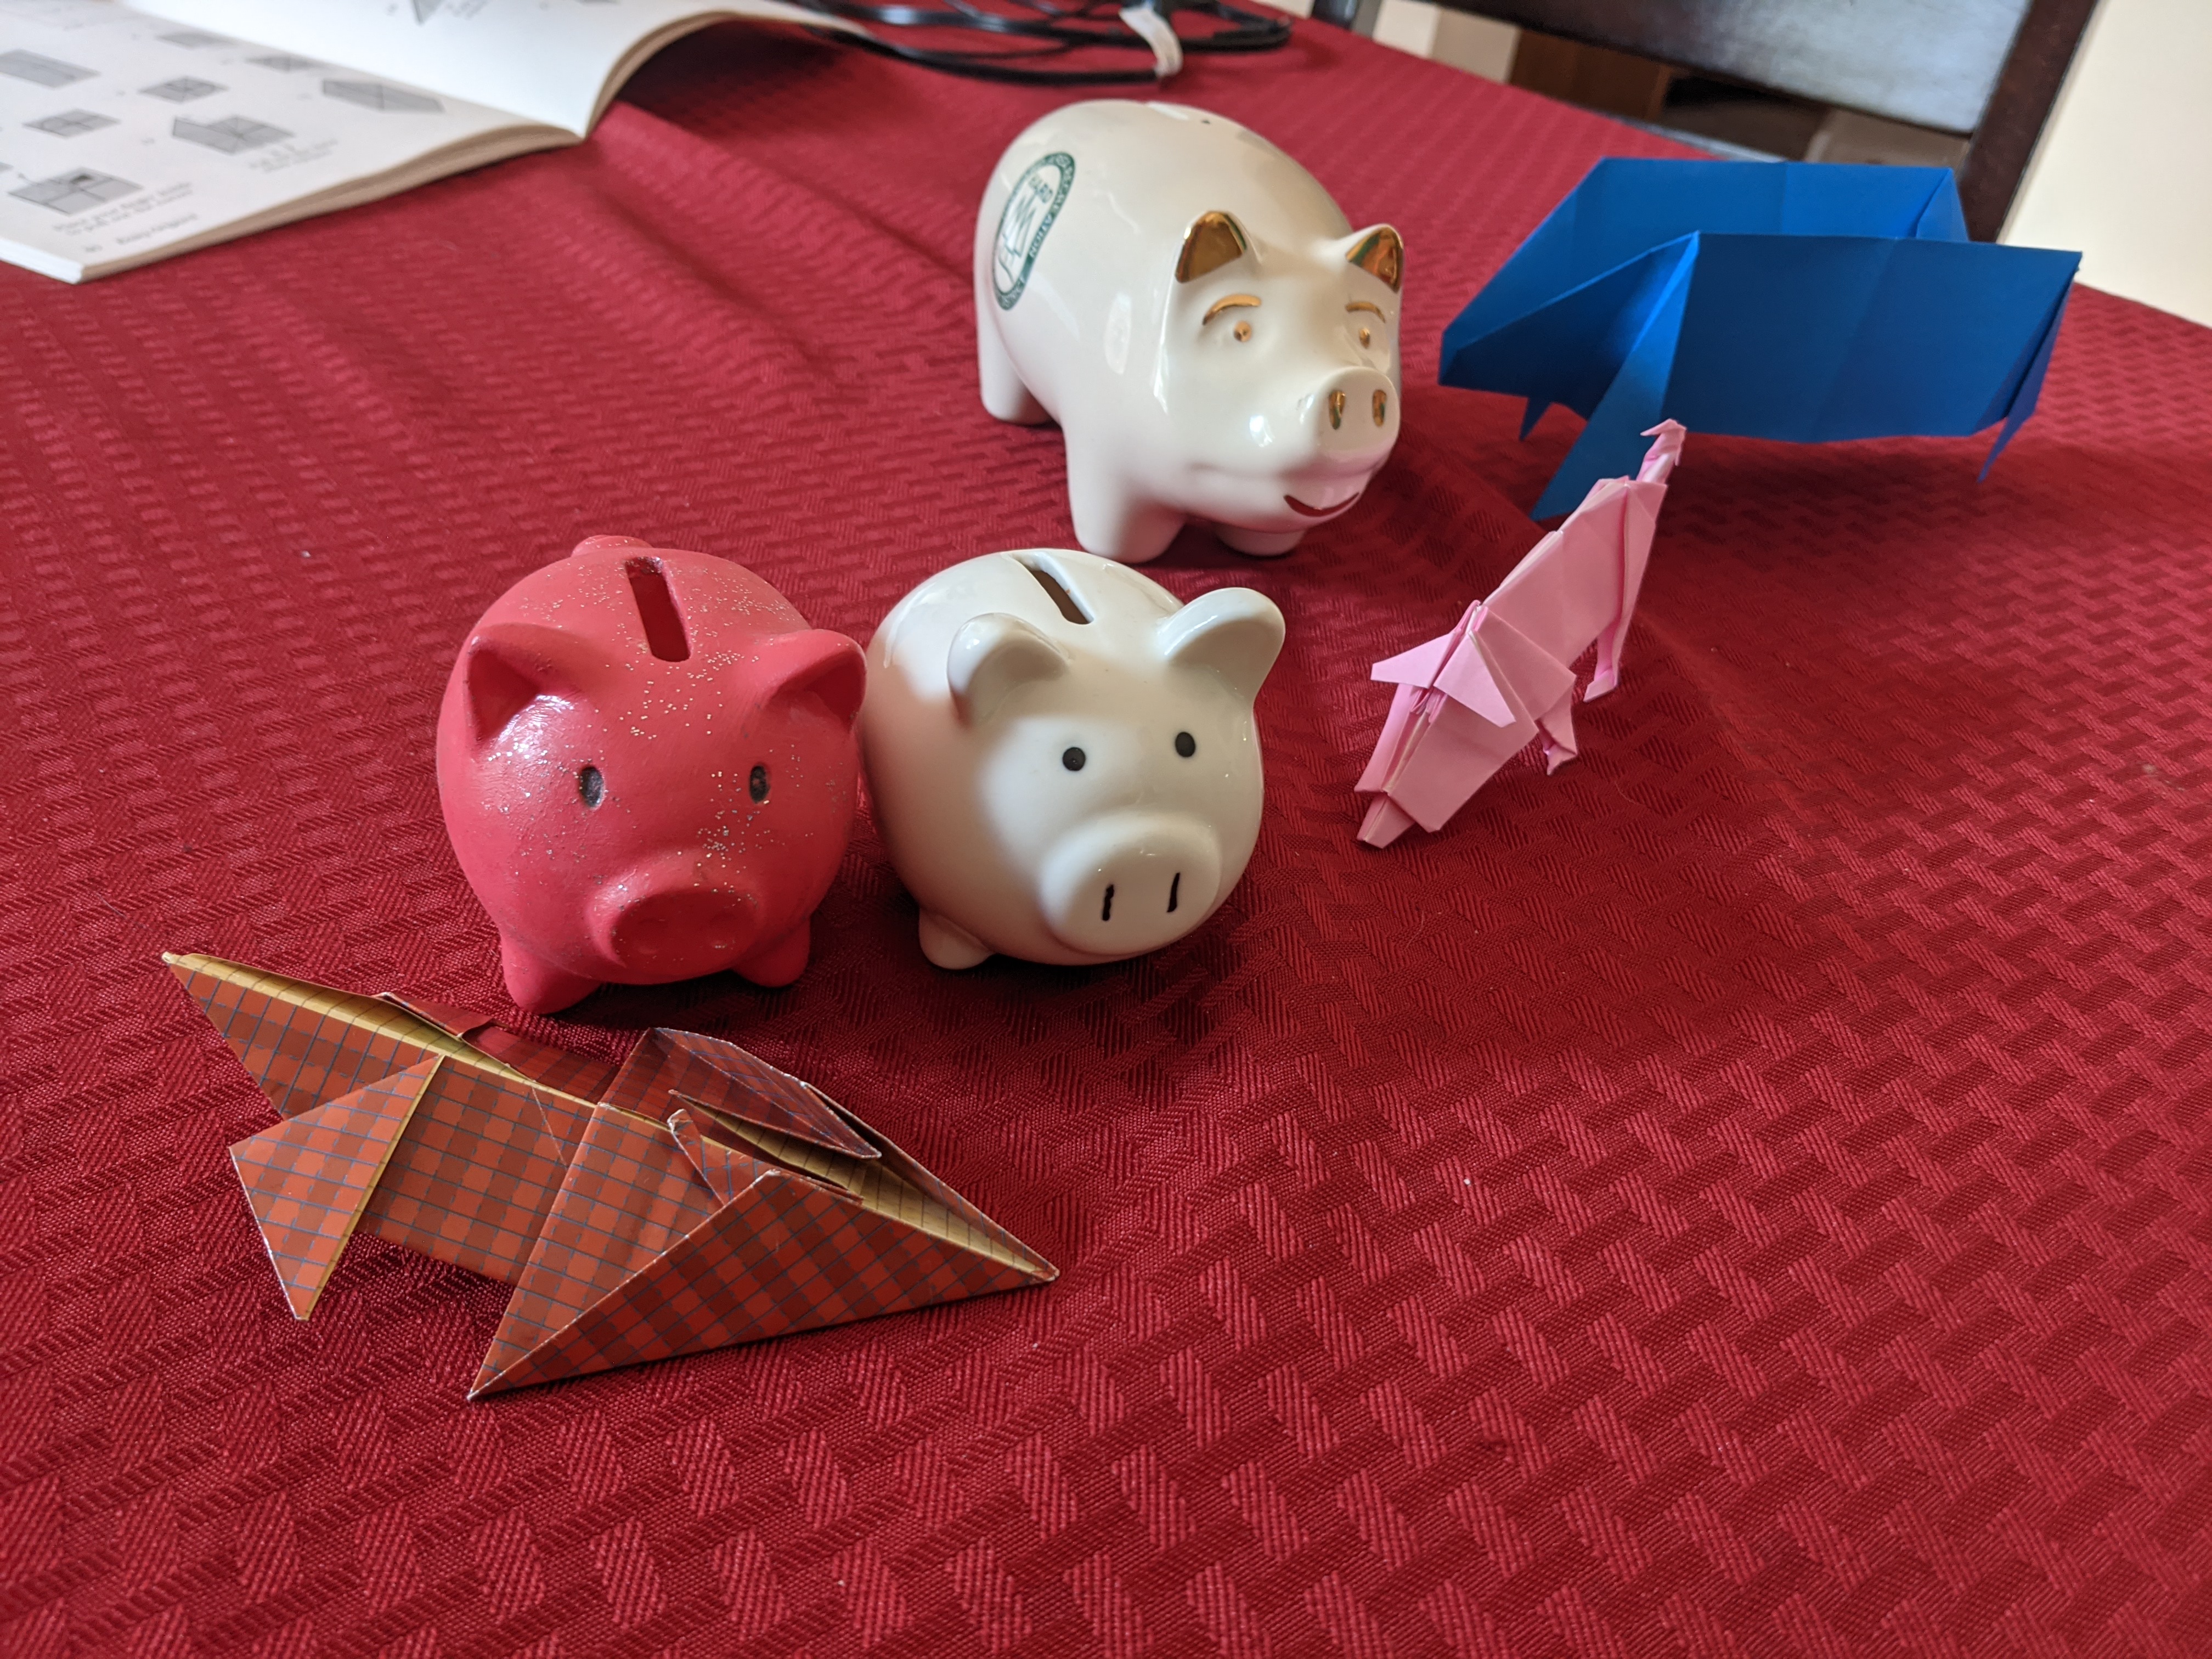 Piggy bank lives